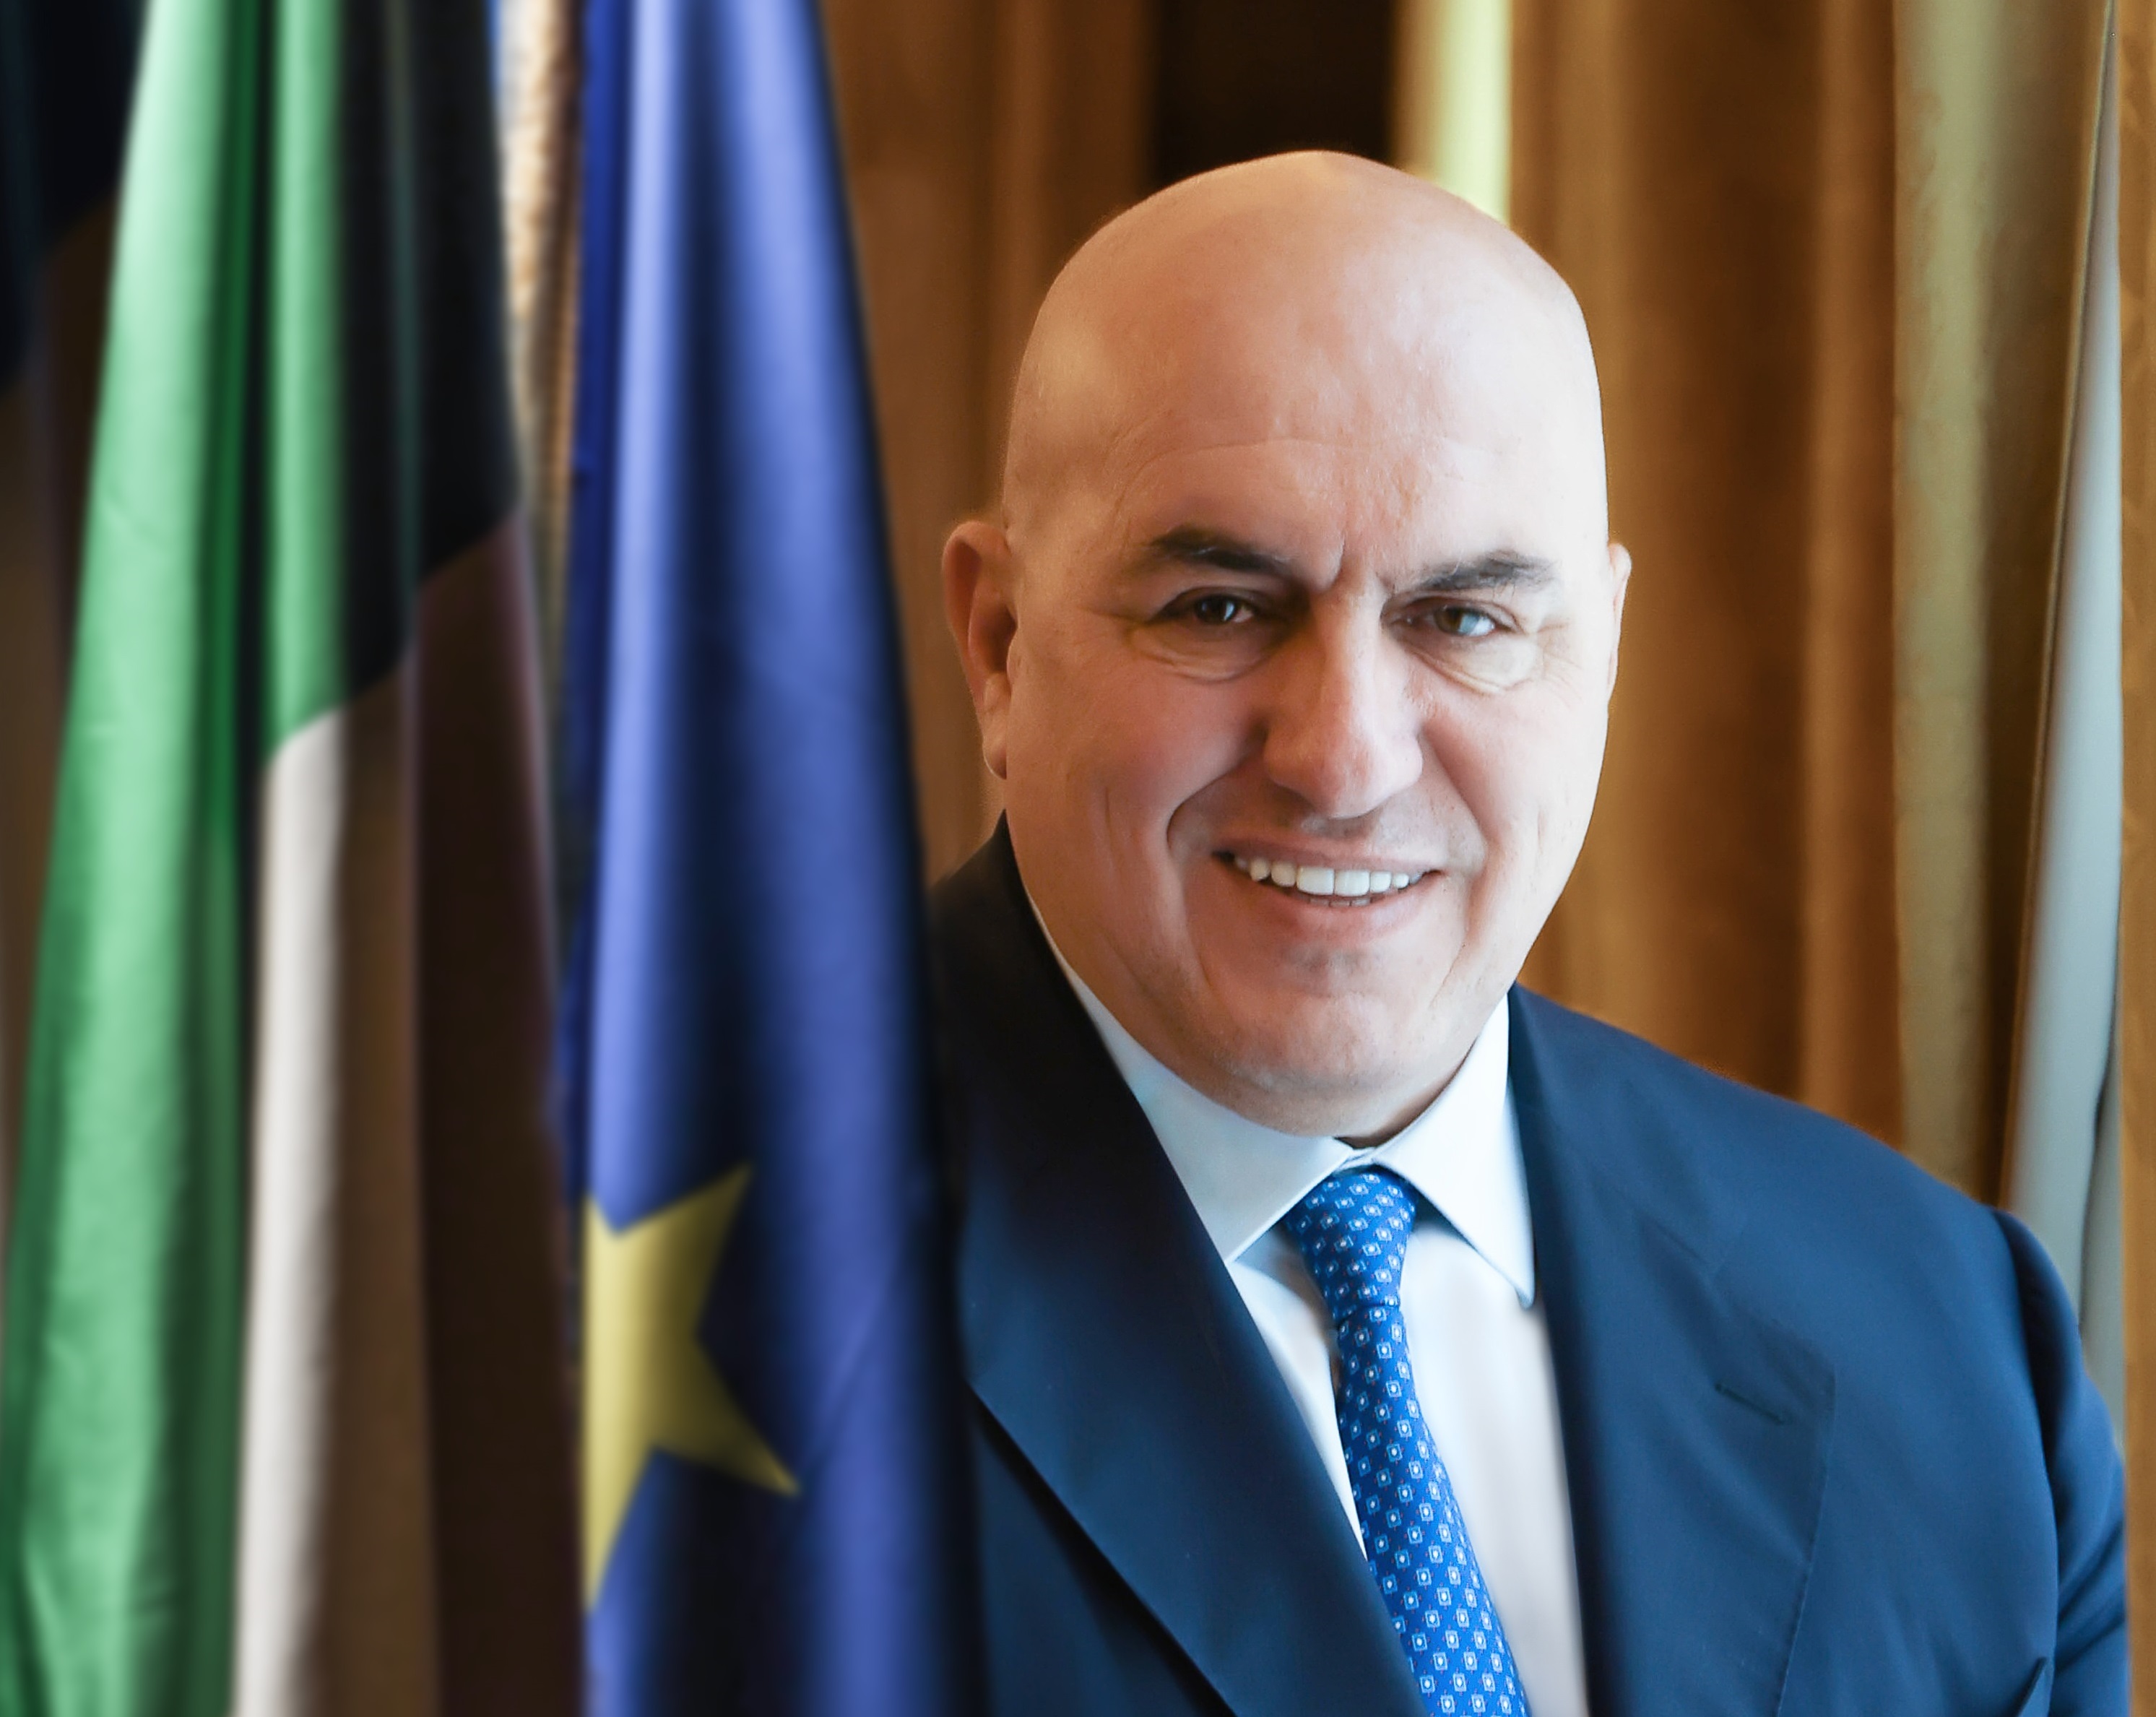 Il ministro Guido Crosetto inaugura la 93esima Fiera internazionale del Tartufo Bianco d’Alba venerdì 6 ottobre alle 17.30